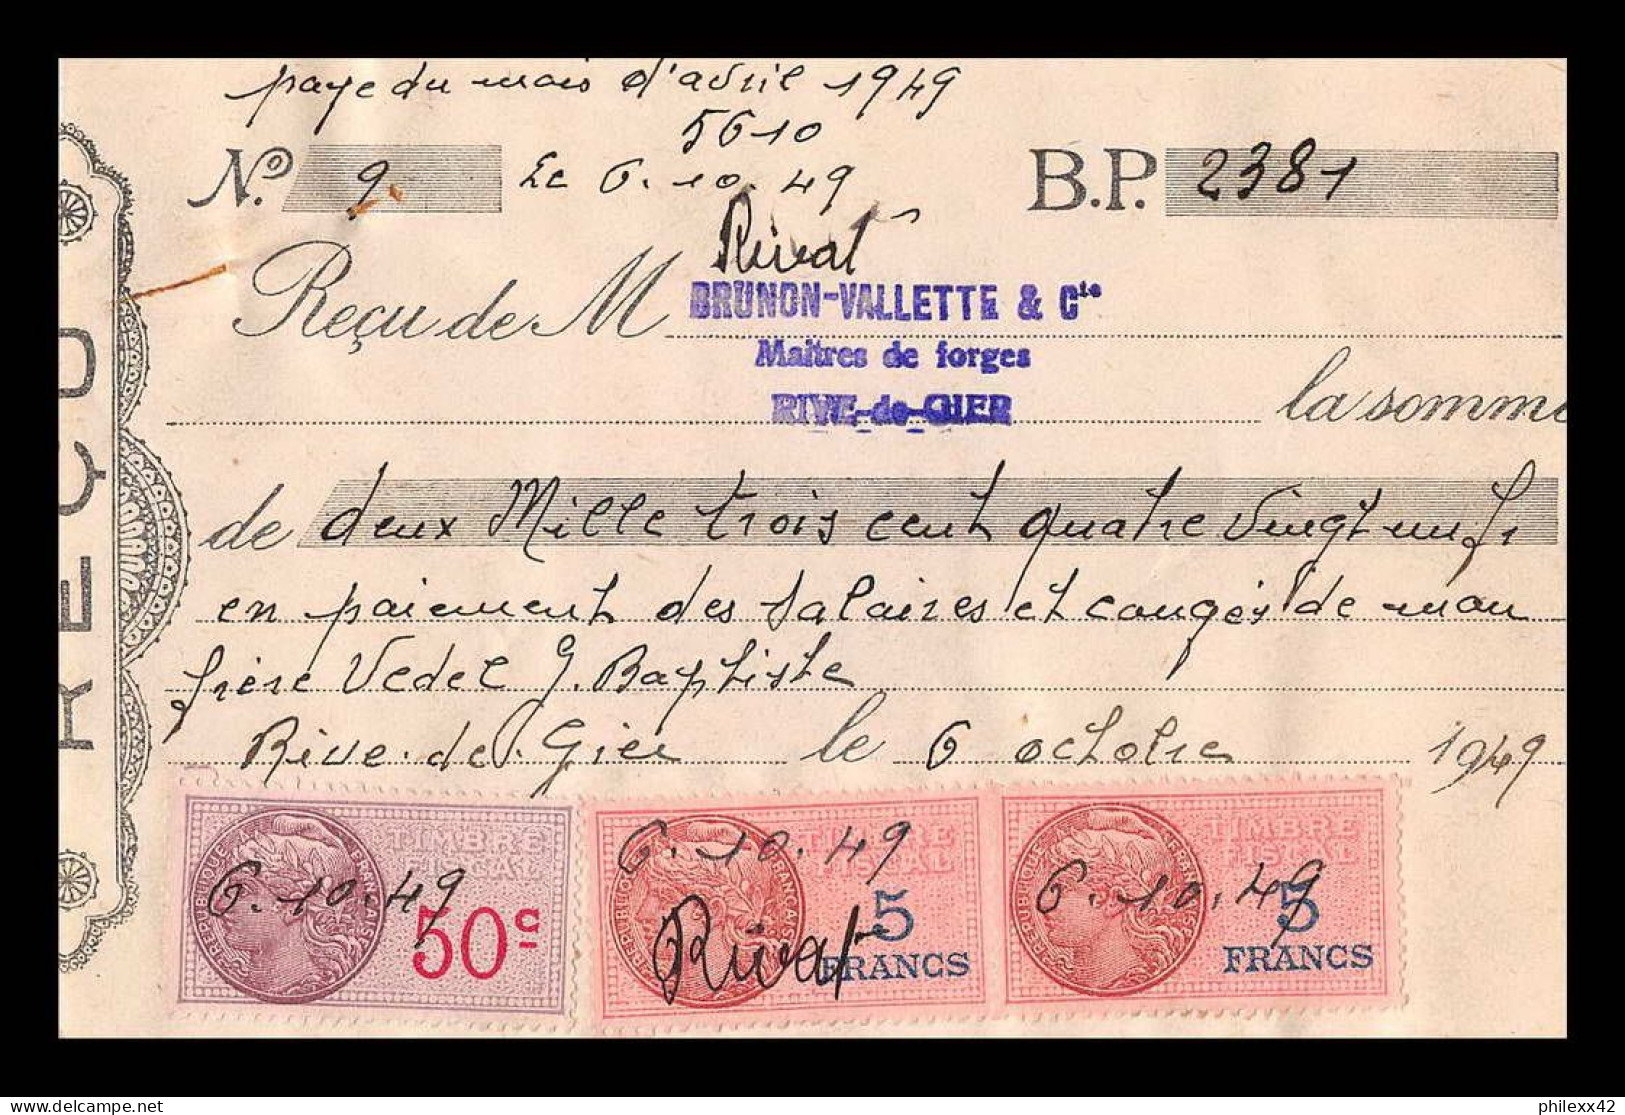 12961 Lettre Taxée Brunon Valette Maitre Forge Rive De Gier Loire 1949 Timbre Fiscal Fiscaux Sur Document France - Lettres & Documents